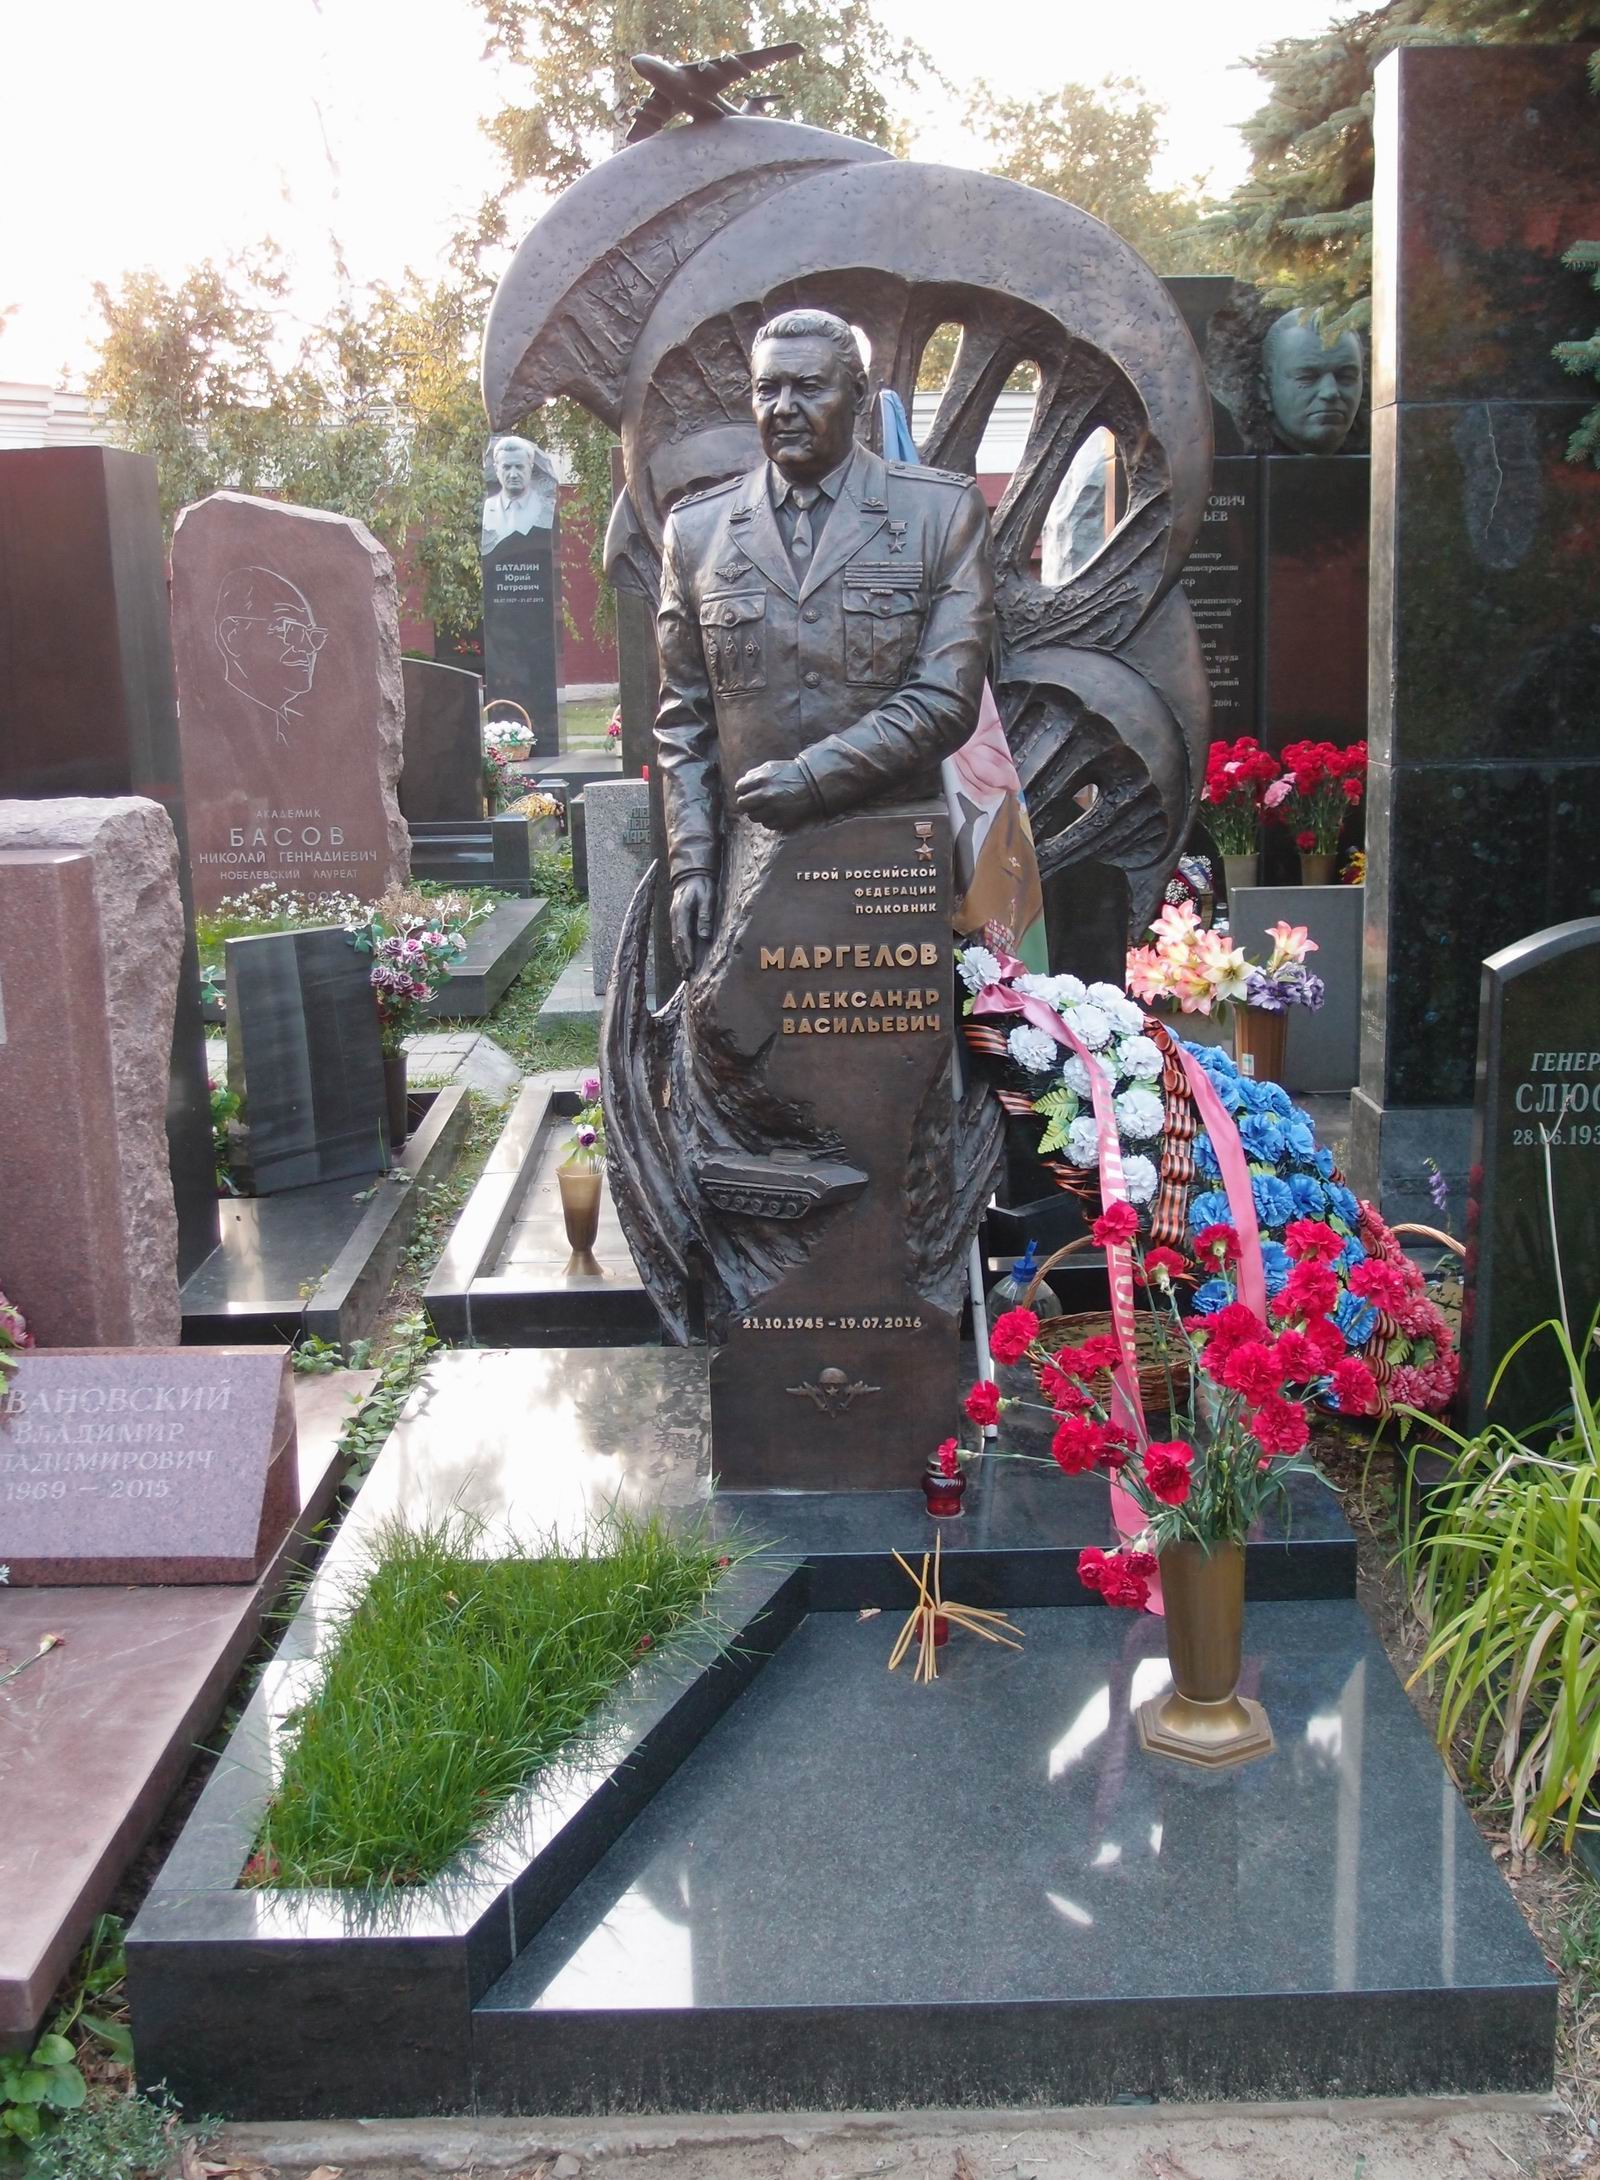 Памятник на могиле Маргелов А.В. (1945-2016), на Новодевичьем кладбище (11-3-2). Нажмите левую кнопку мыши чтобы увидеть фрагмент памятника.